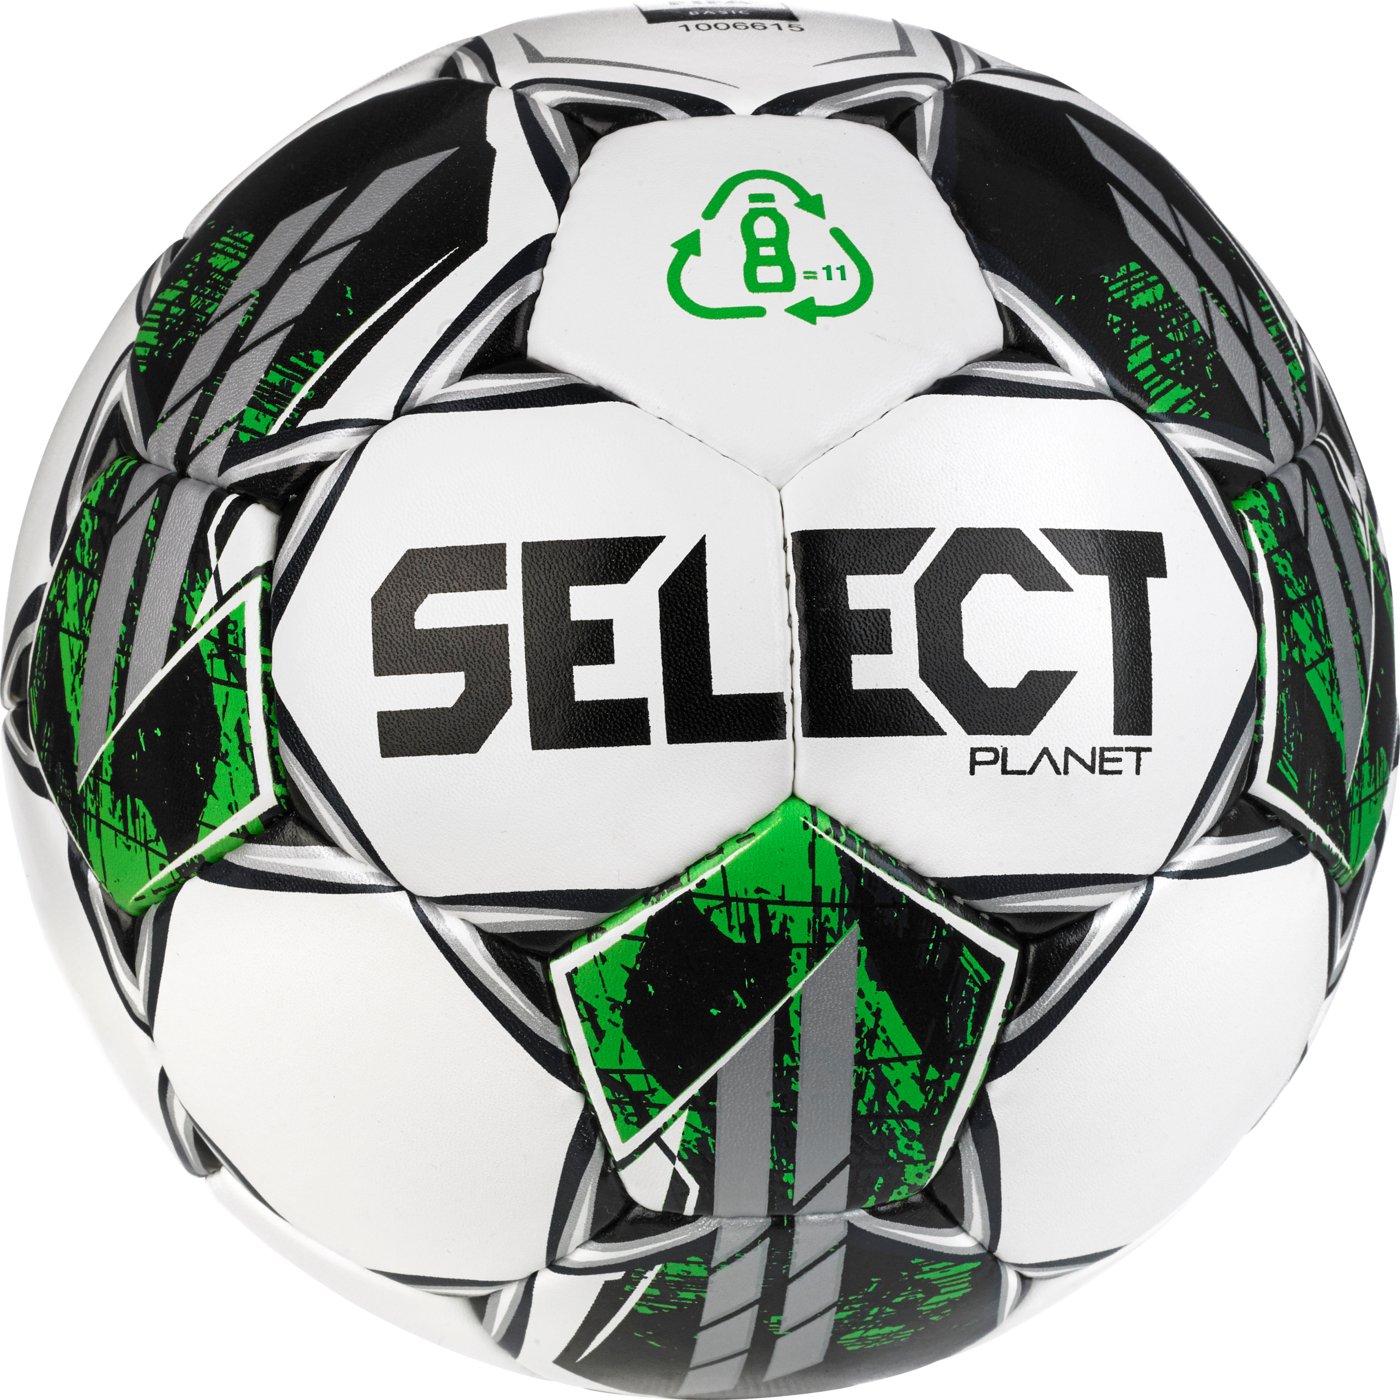 Мяч футбольный SELECT Planet FIFA Basic v23 (963) бело/зеленый, 5, білий/зелений, 5